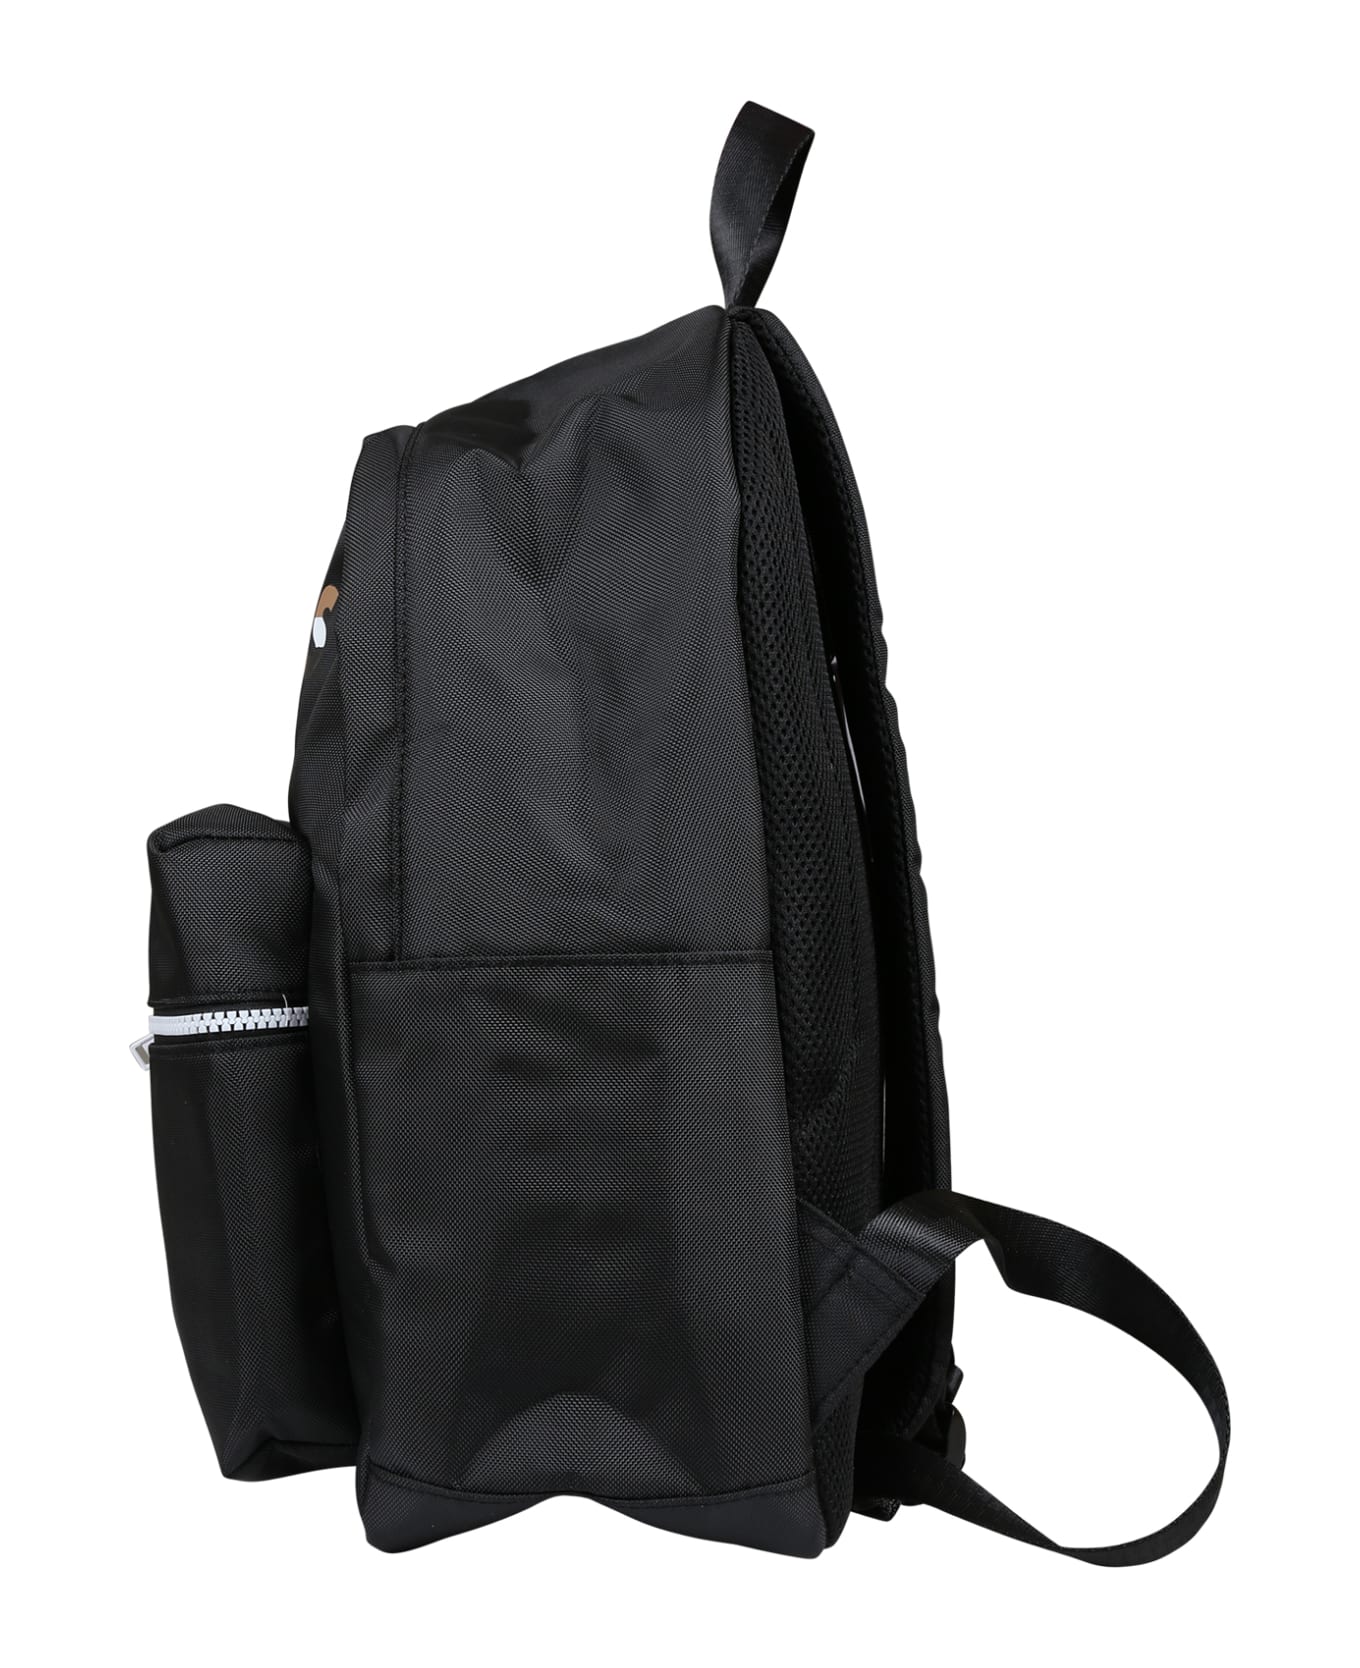 Hugo Boss Black Backpack For Boy With Logo - Black アクセサリー＆ギフト